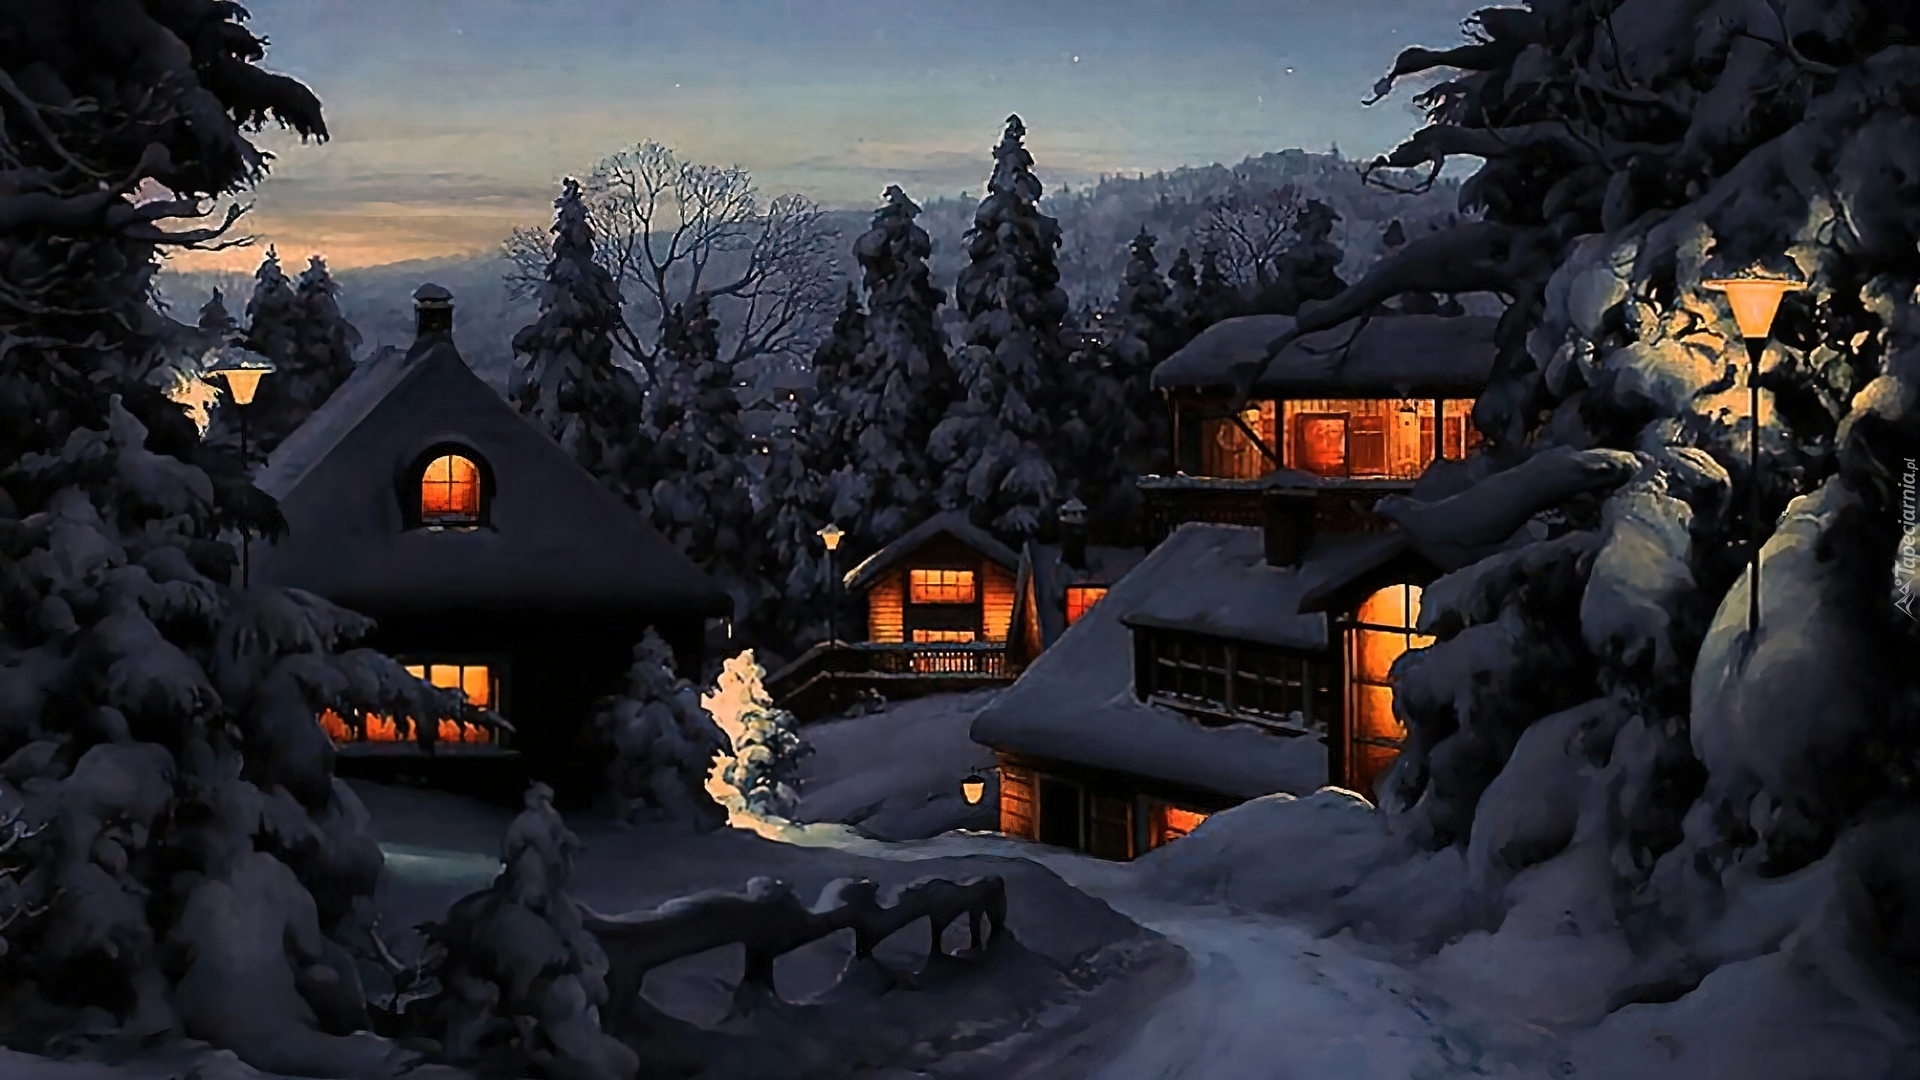 Долгий зимний вечер текст. Заснеженный сказочный домик. Сказочный домик в зимнем лесу. Сказочный зимний дом. Сказочный домик в снегу.